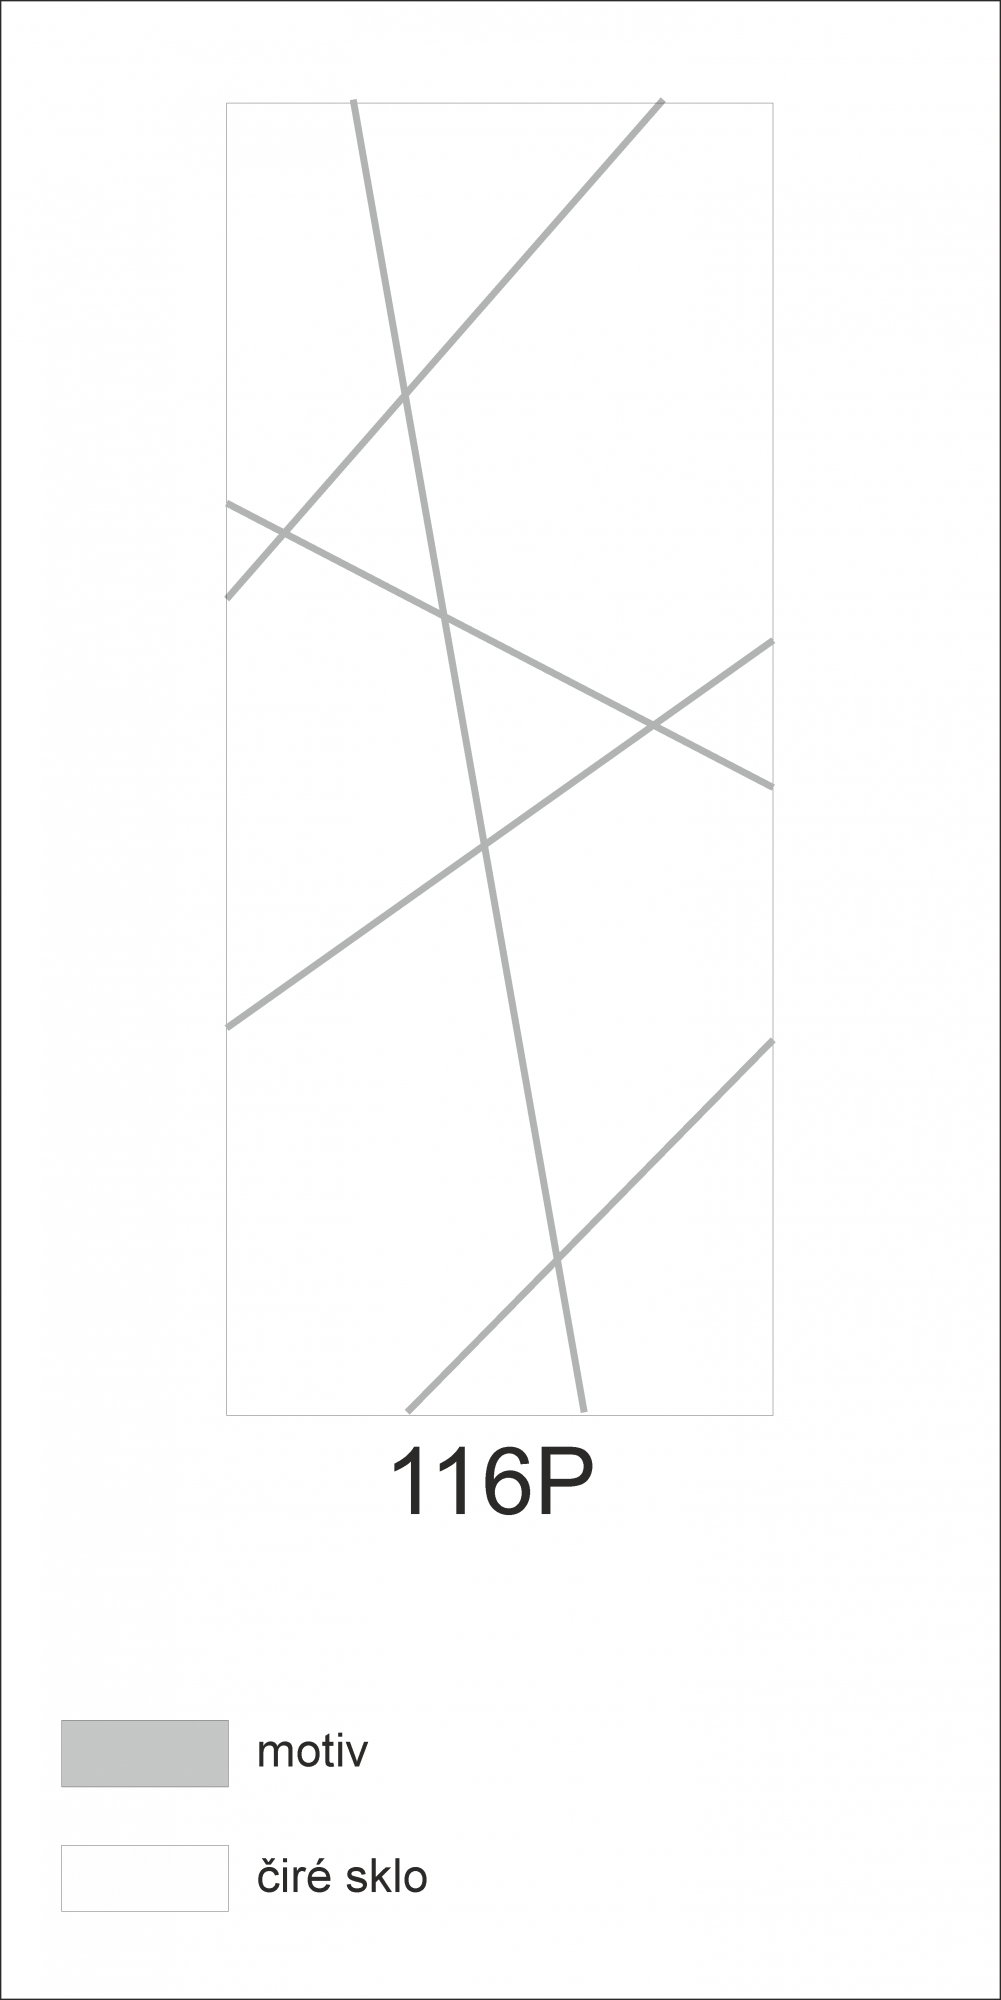 Možný motiv na skleněných dveřích nebo skleněných stěnách 116P - design čar